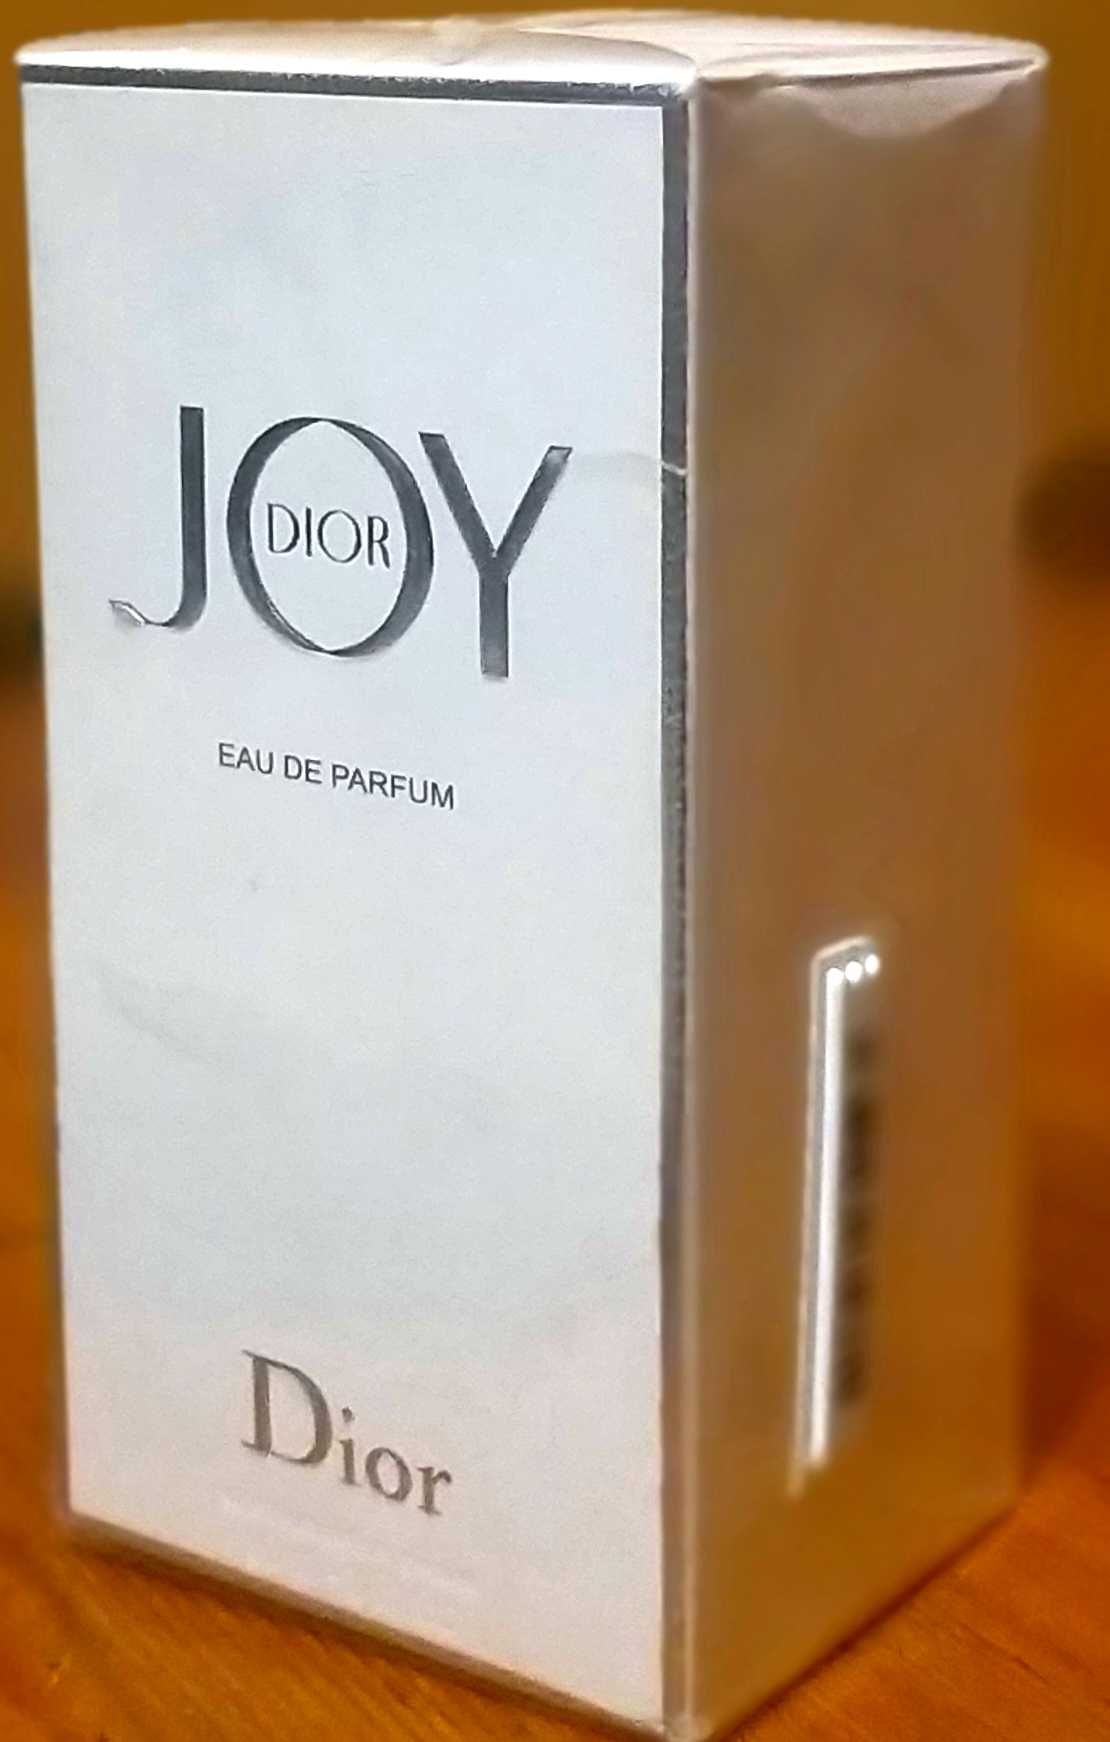 Joy by Dior Christian Dior